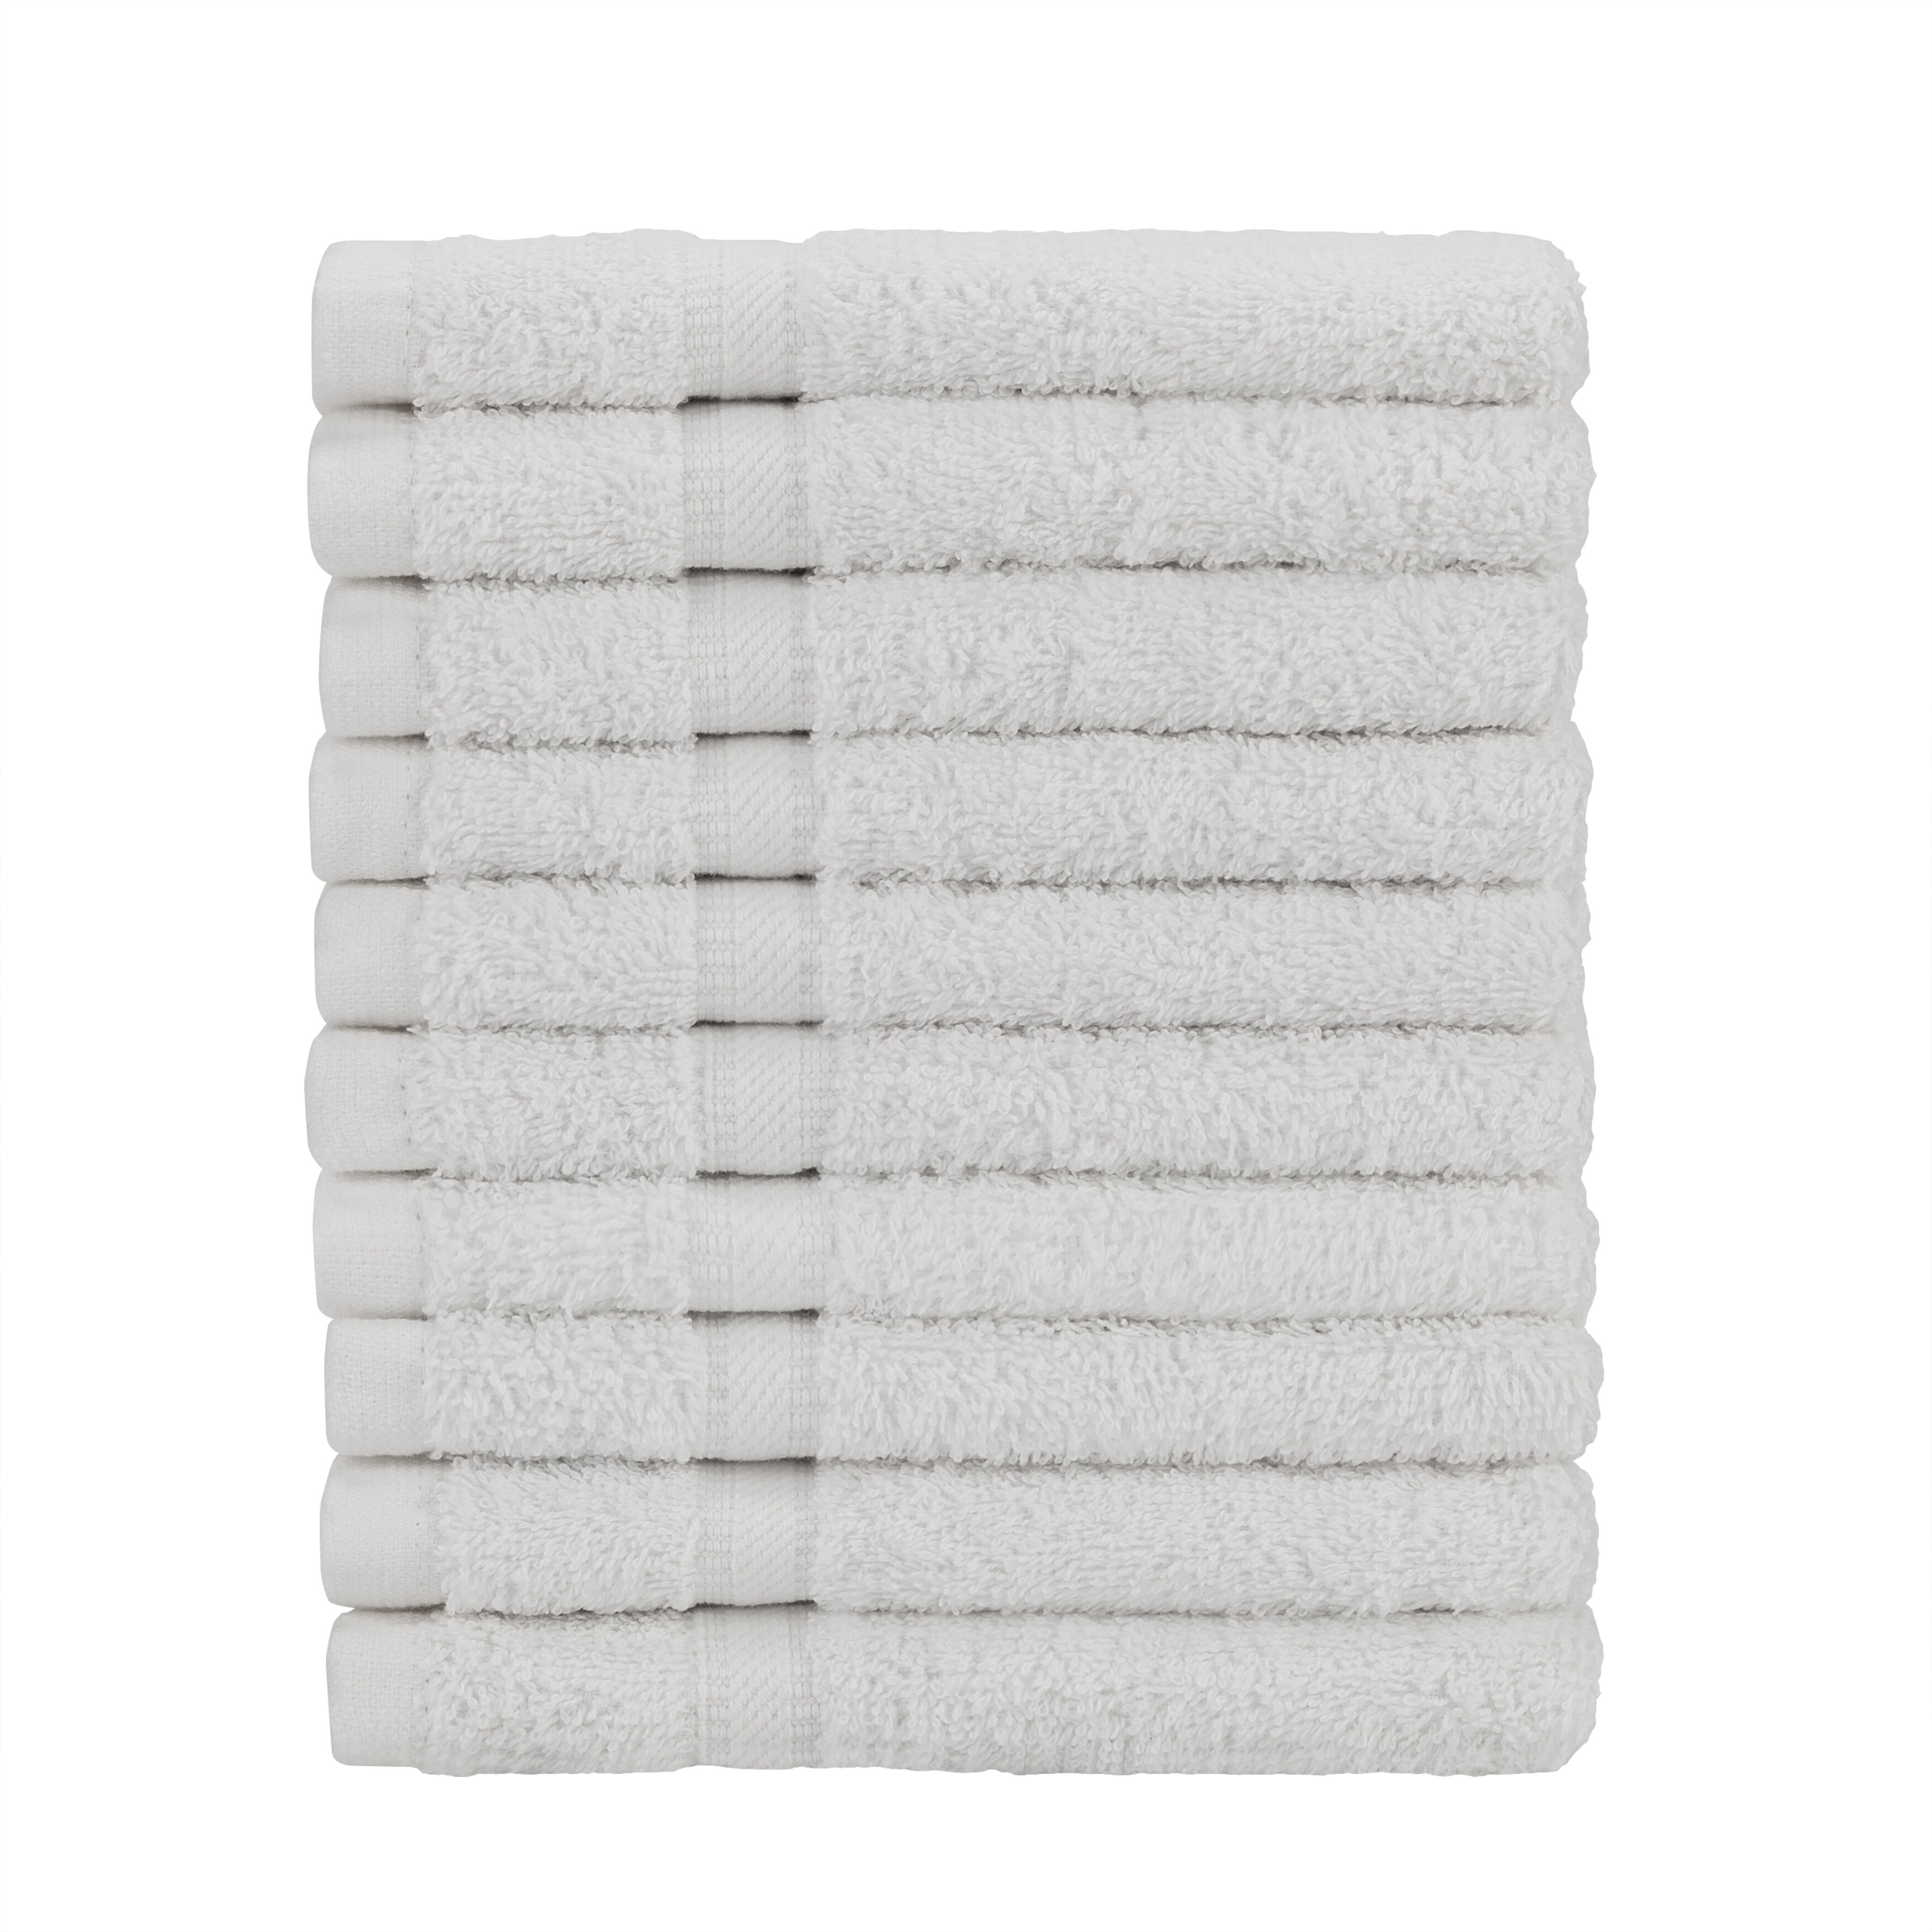 Sobel Westex Home 12 Piece Towel Set